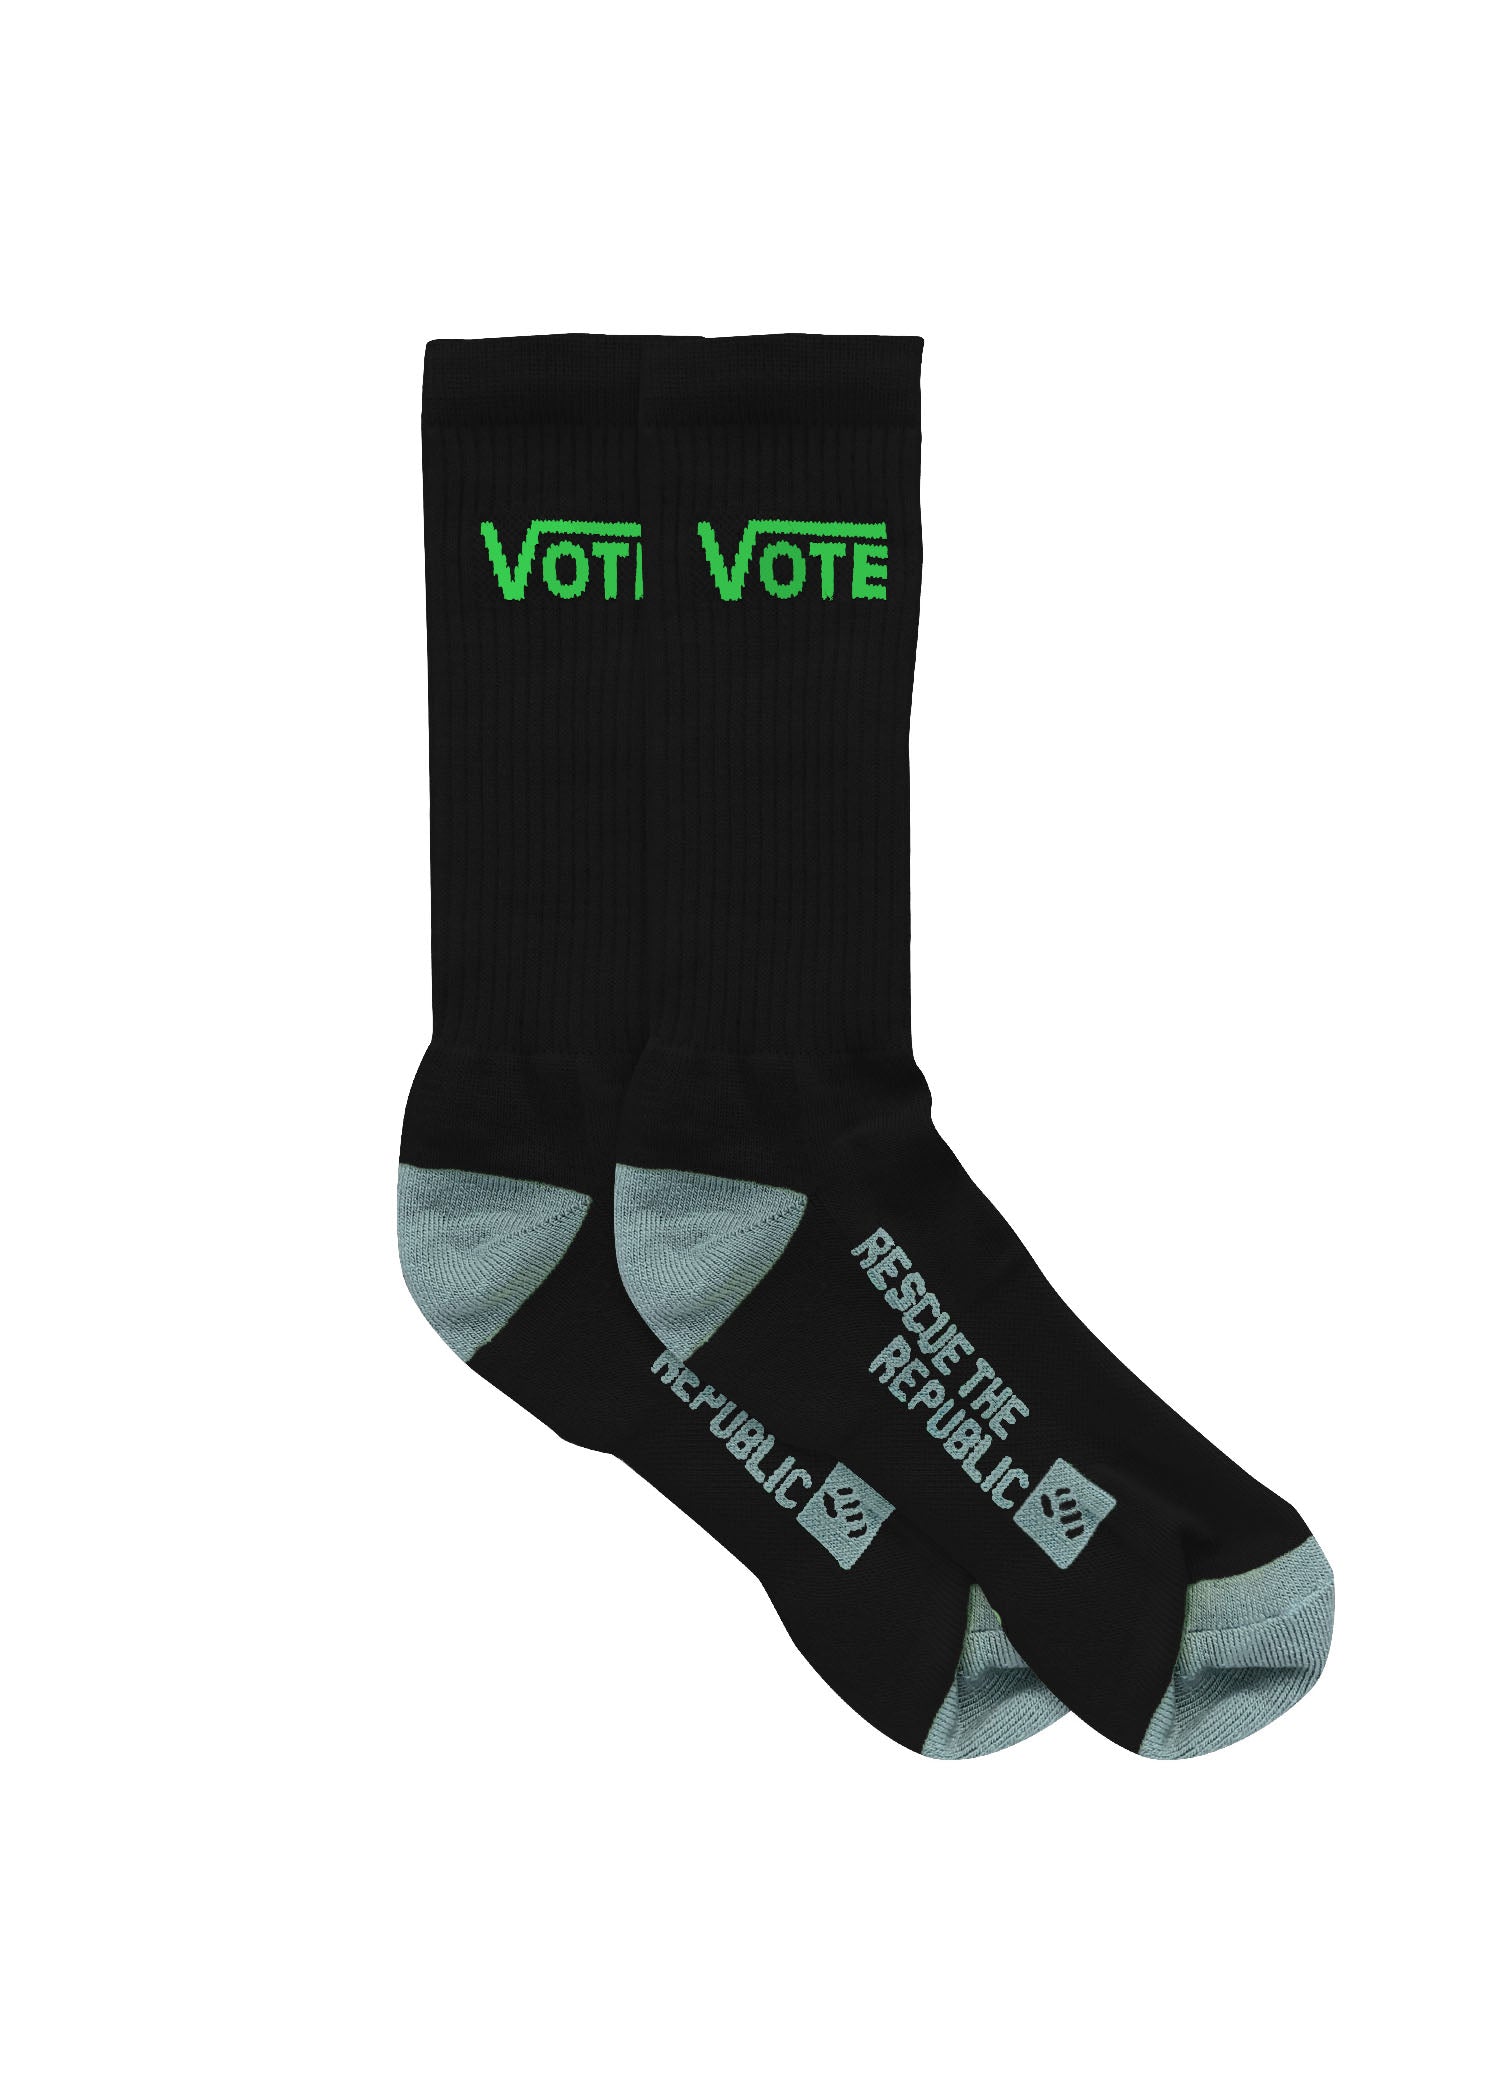 Vote Black Crew Socks